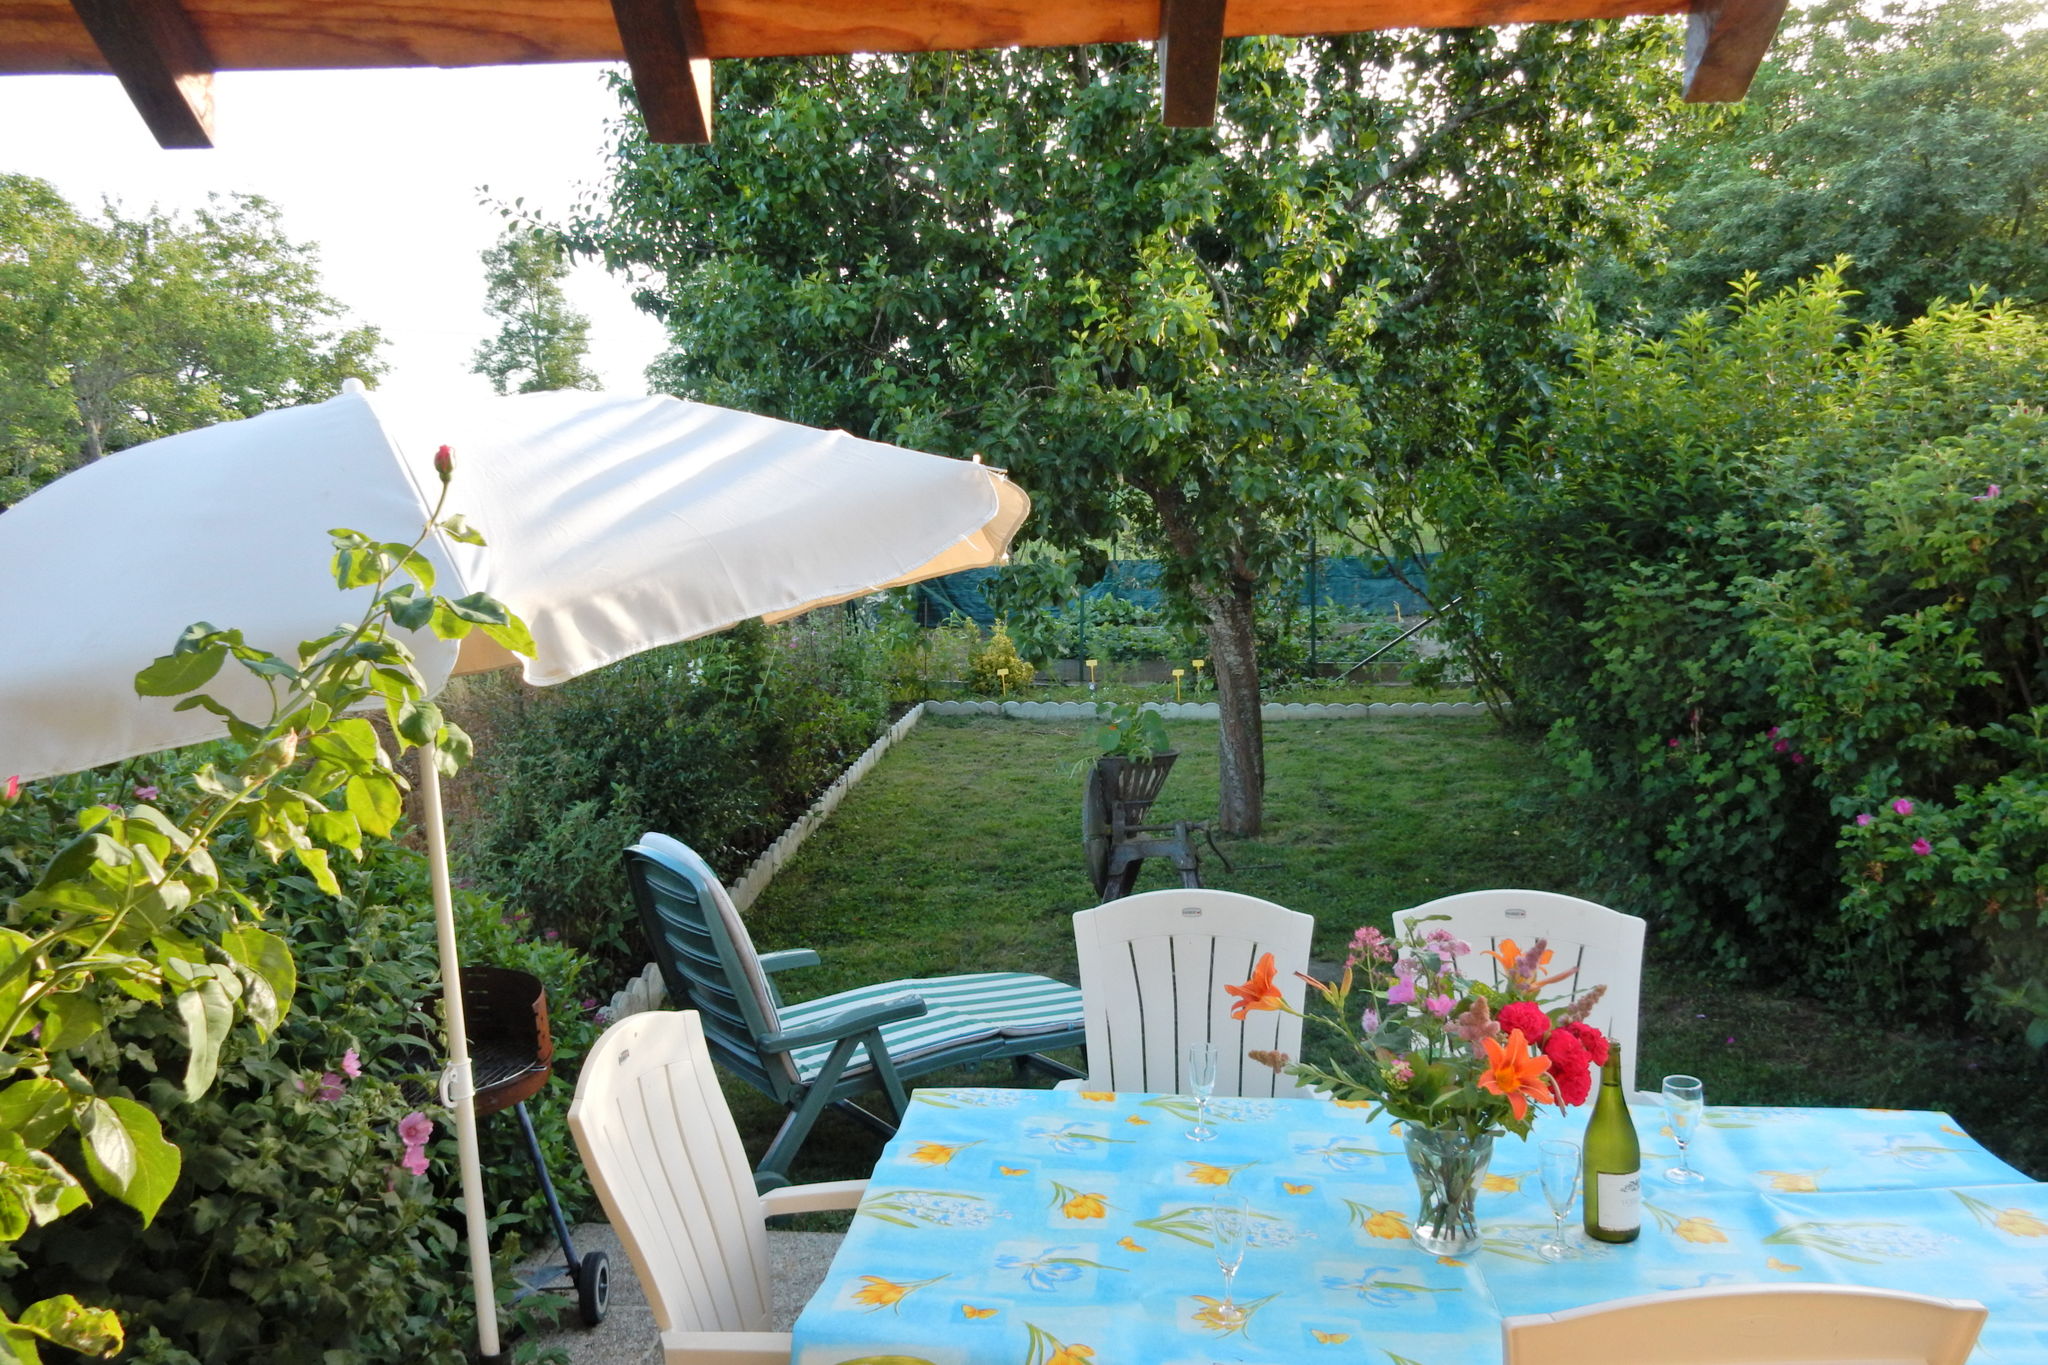 Maison de vacances paisible à Vignol avec piscine chauffée